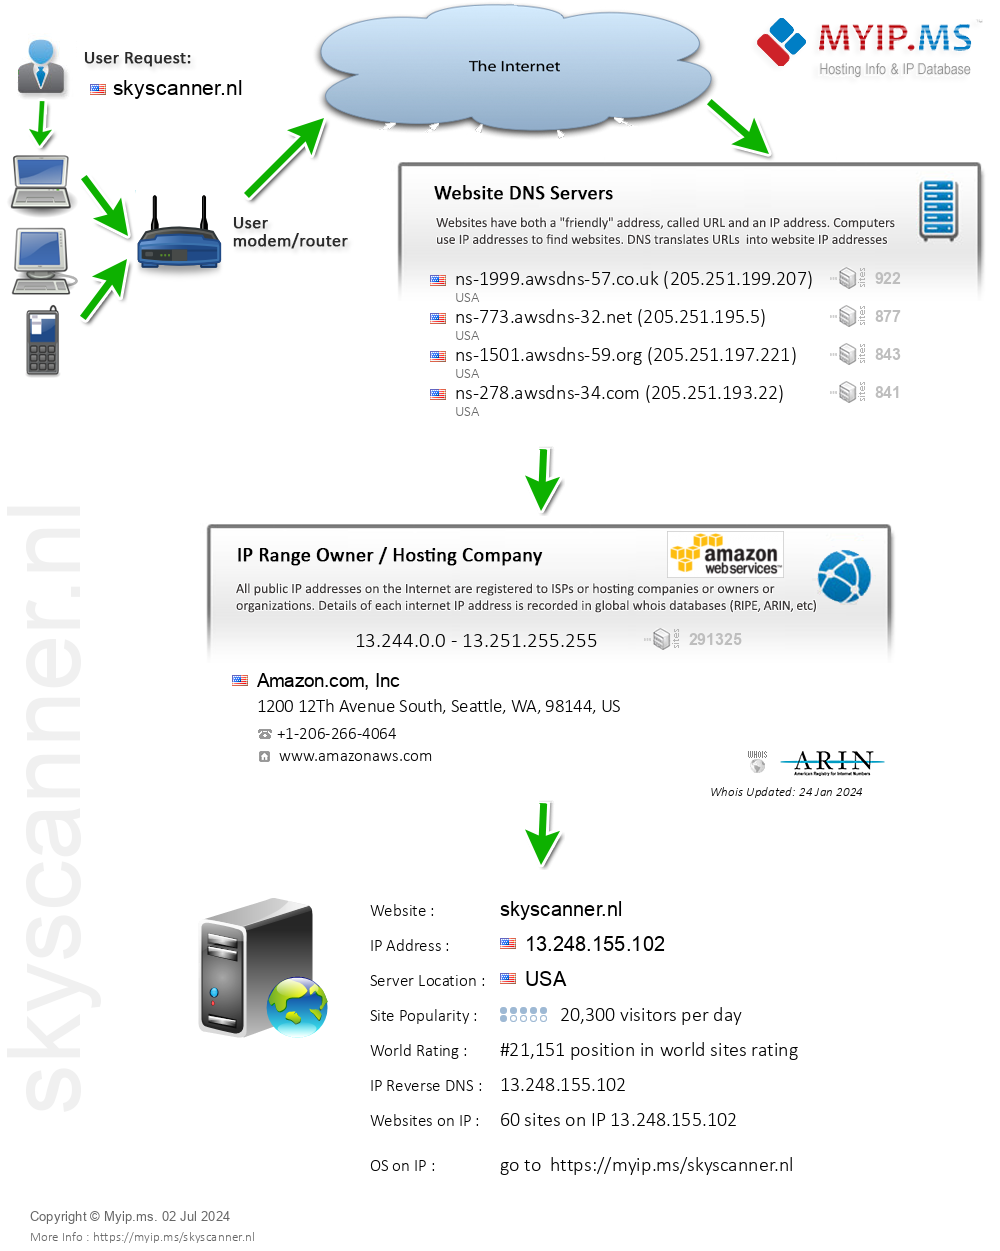 Skyscanner.nl - Website Hosting Visual IP Diagram